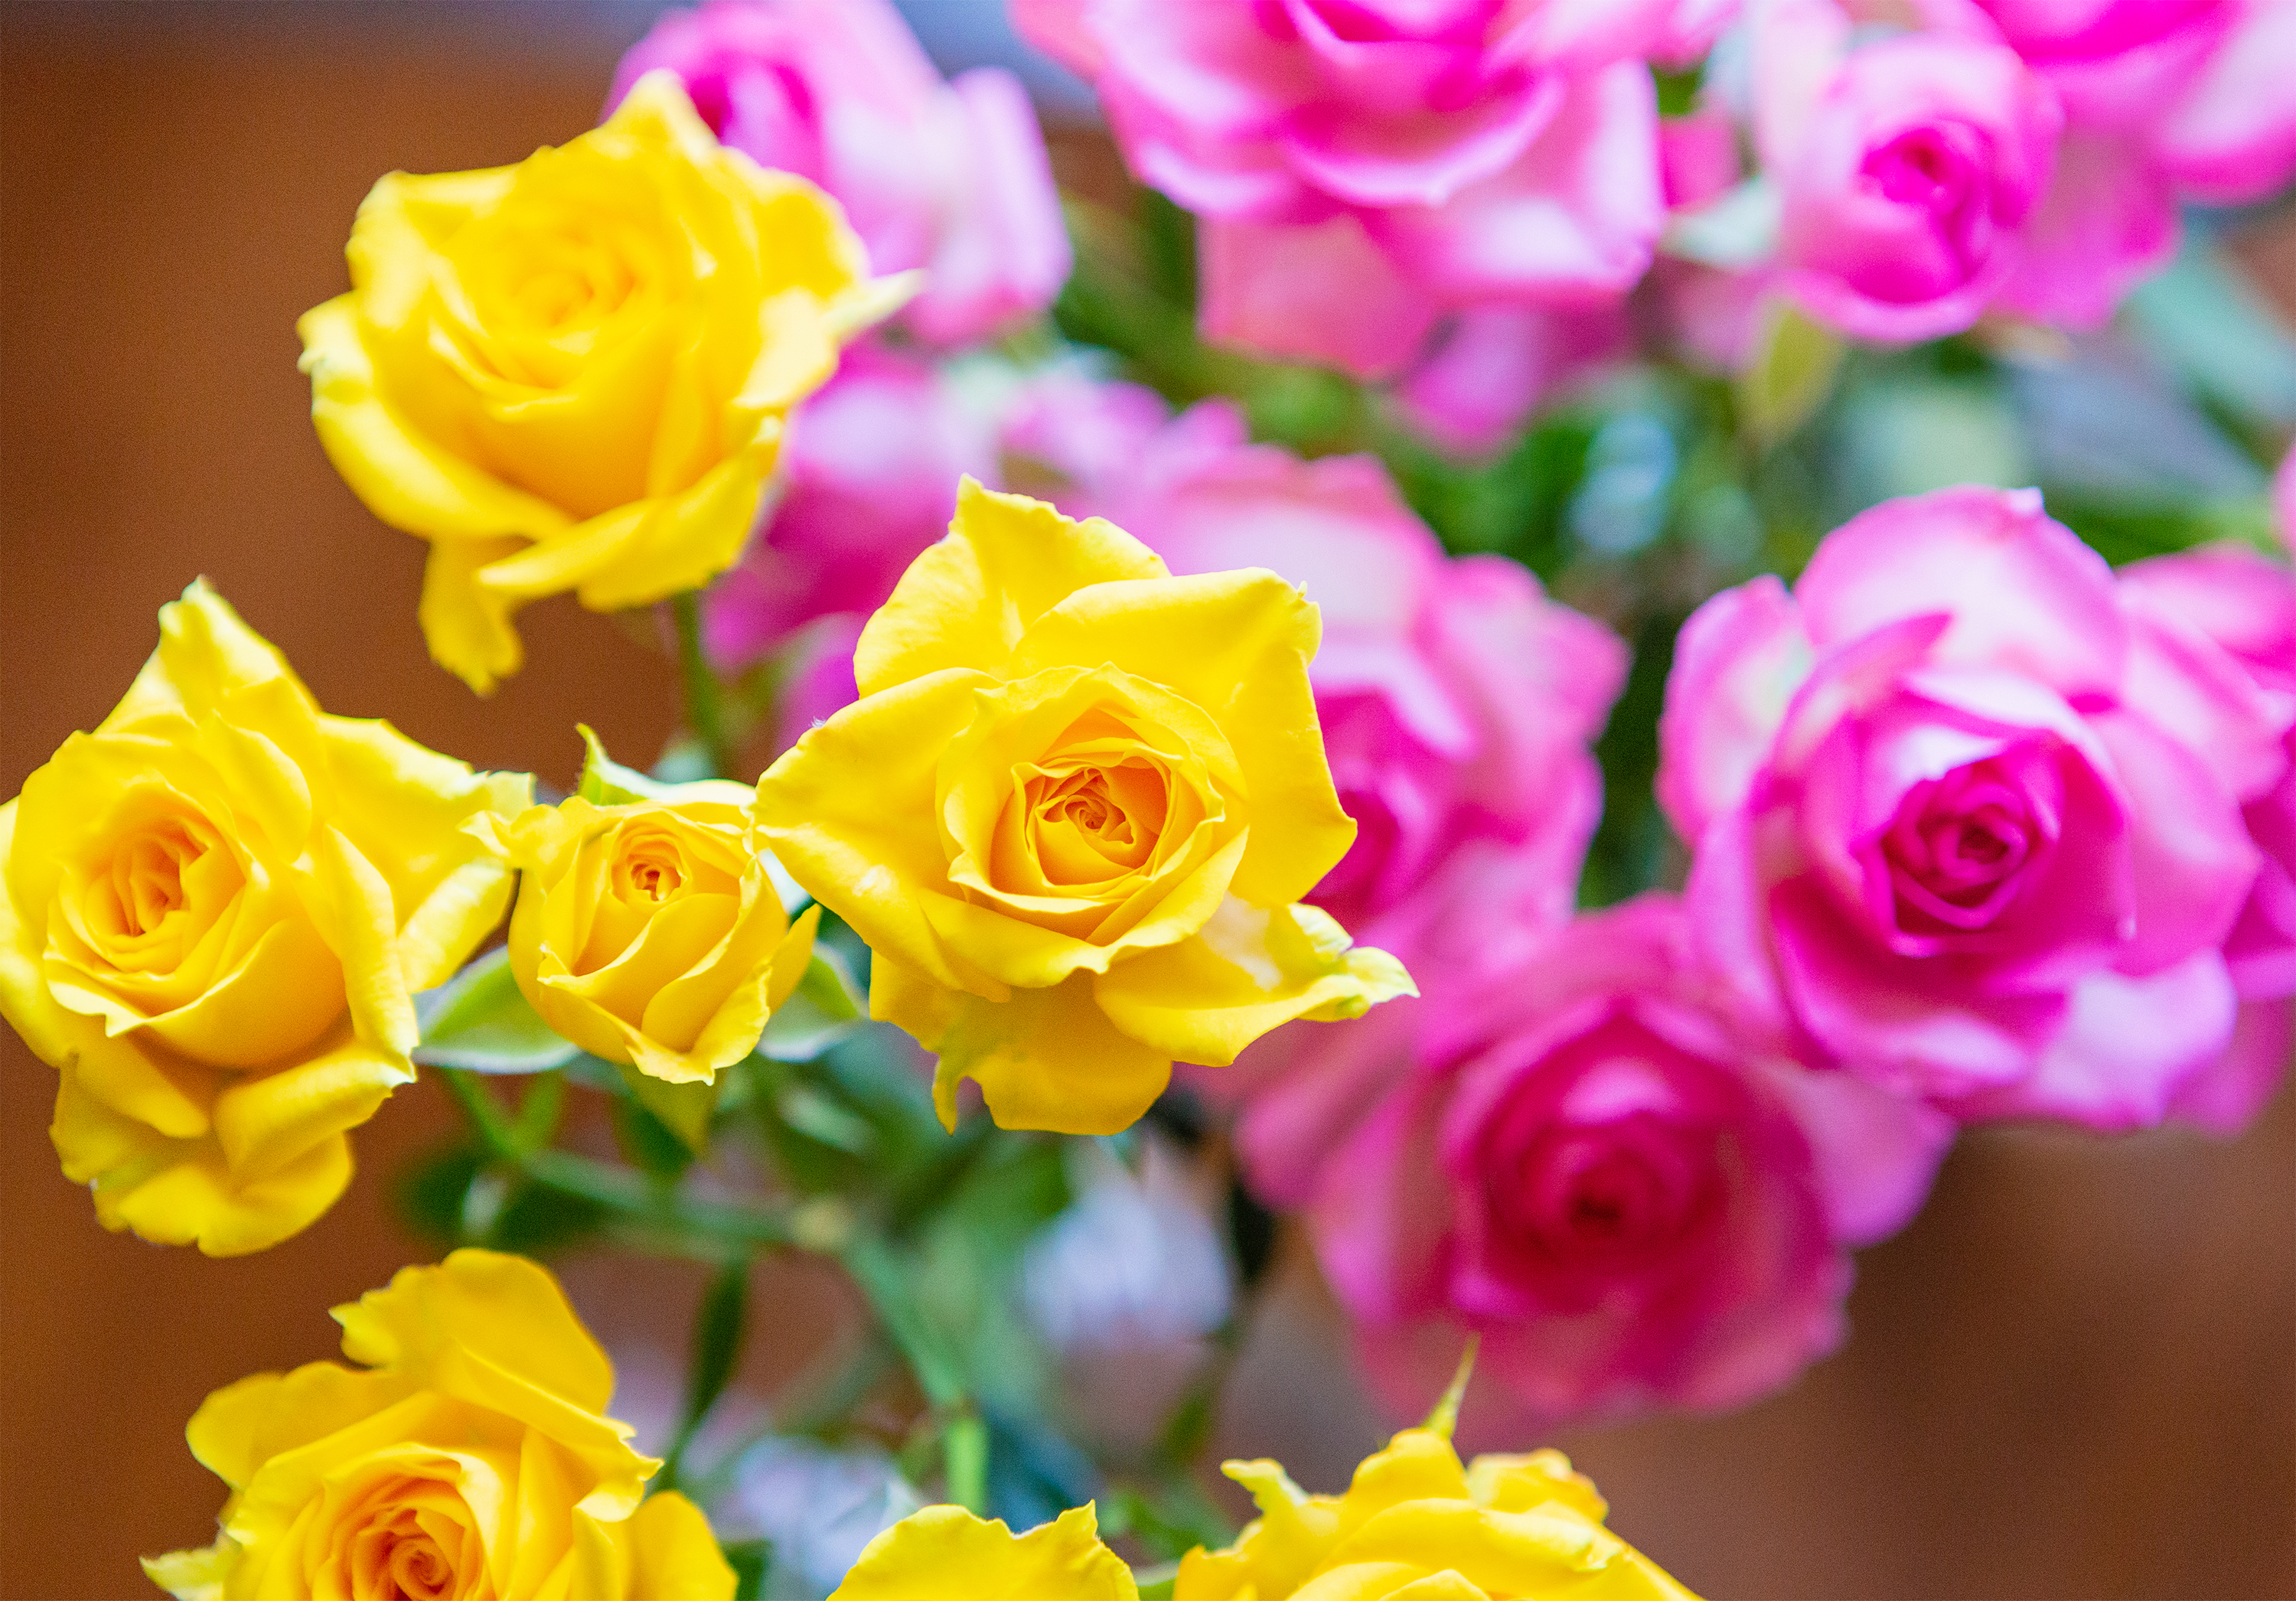 淡いピンクと黄色のバラ 薔薇 の花02 無料の高画質フリー写真素材 イメージズラボ